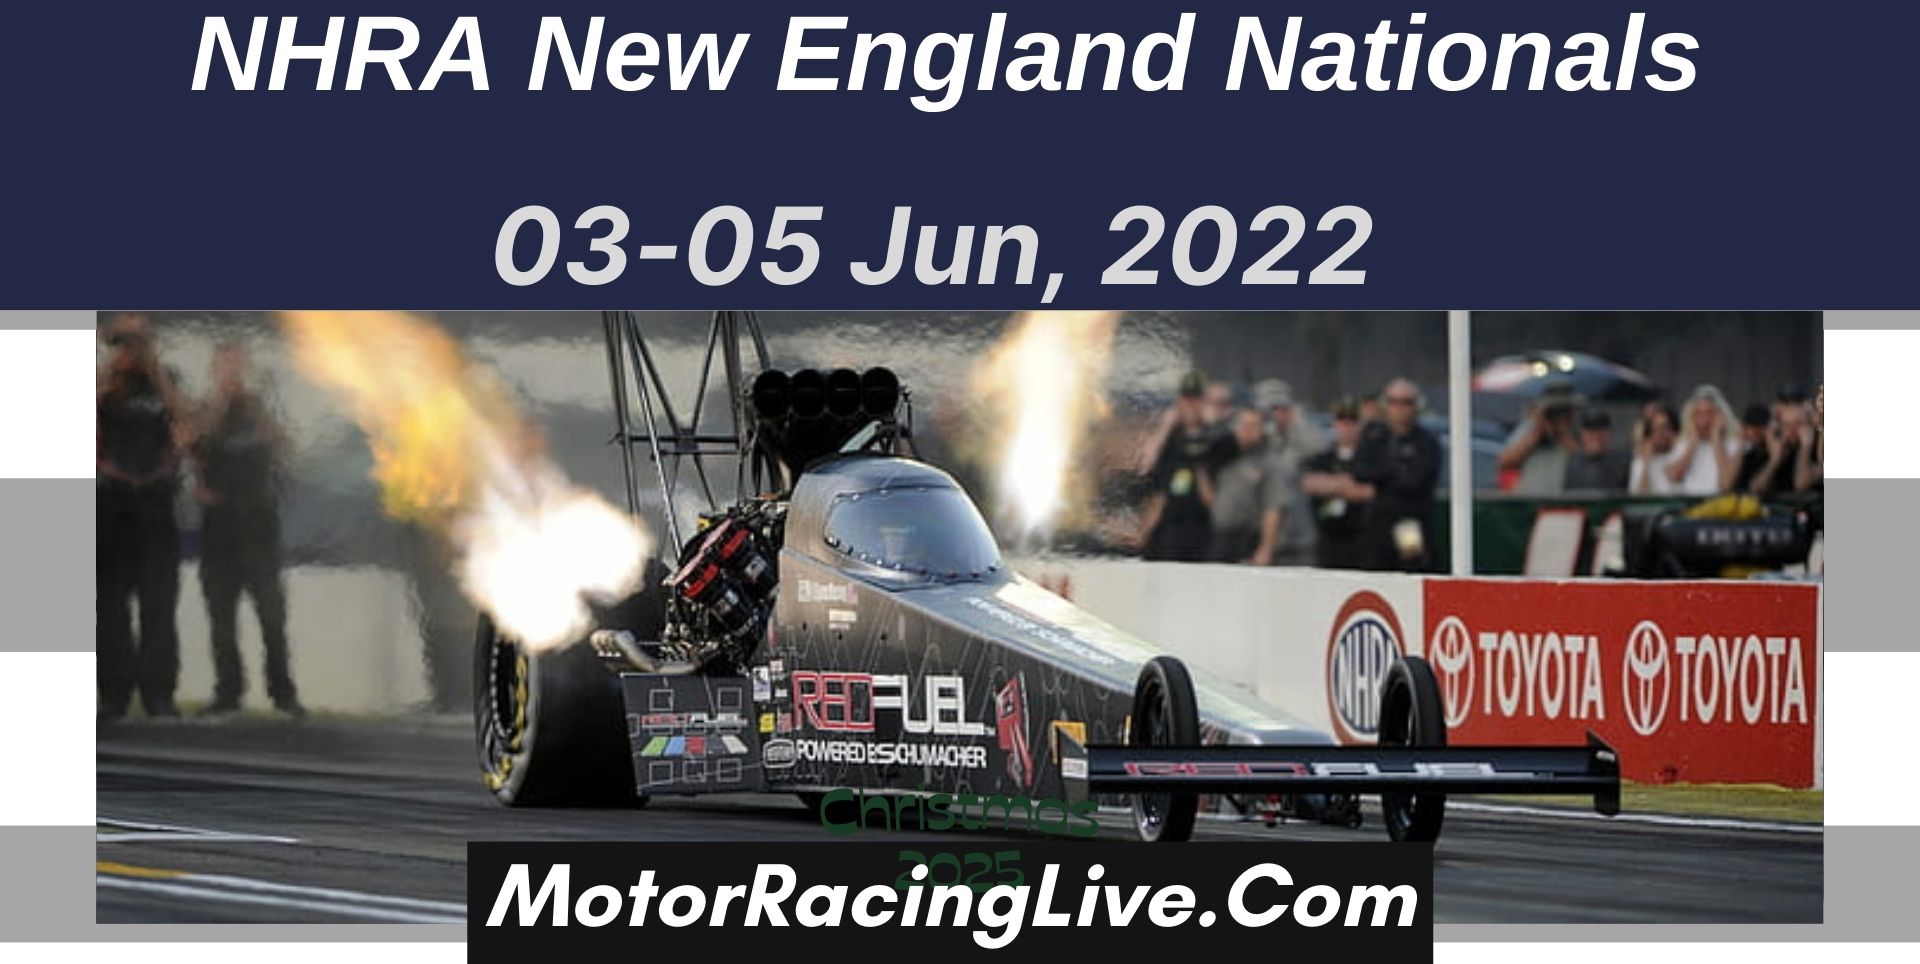 NHRA New England Nationals 2022 Live Stream